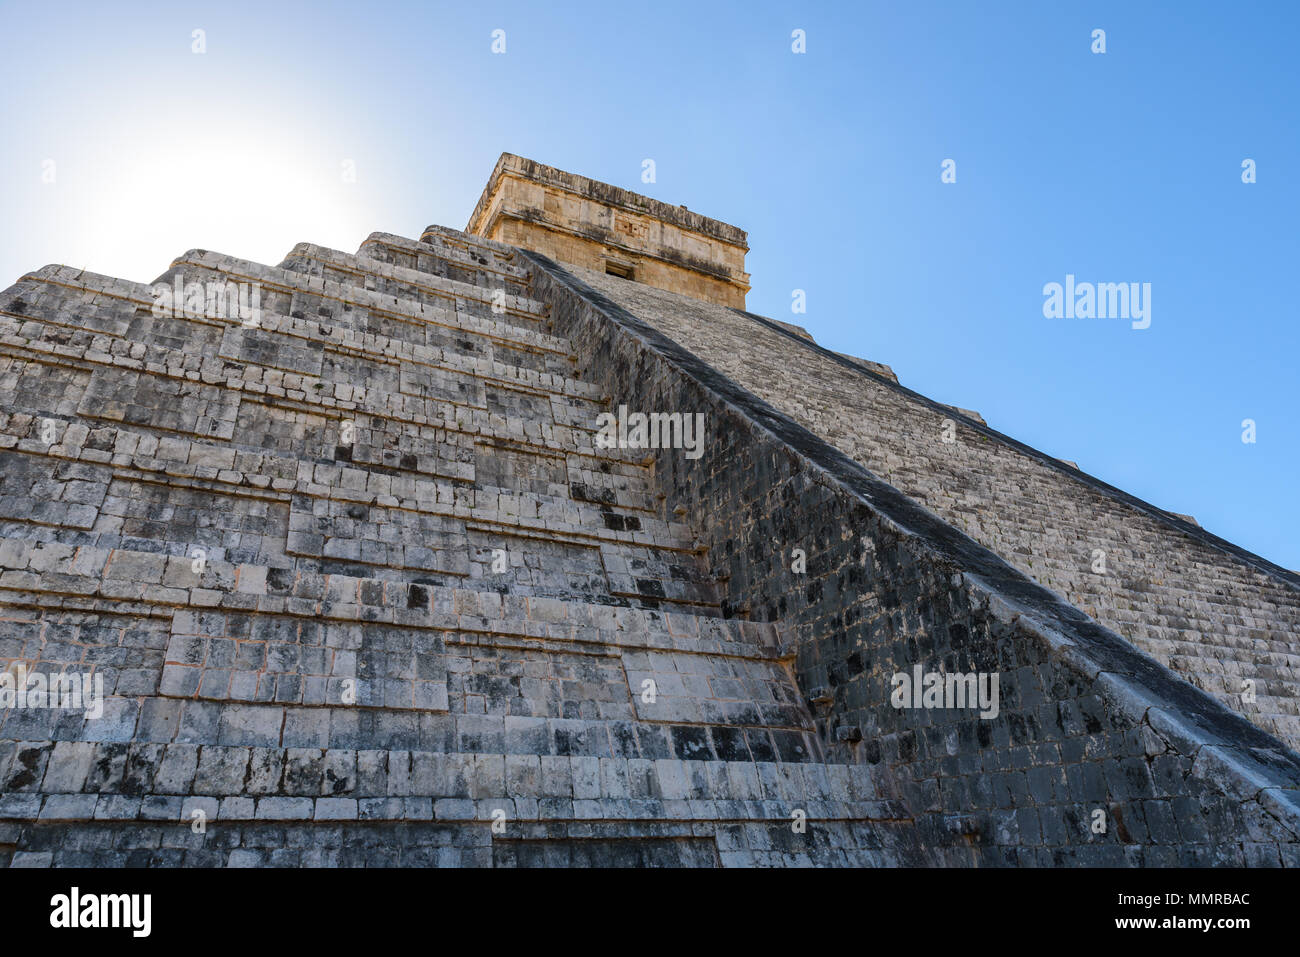 Chichen Itza - El Castillo Pyramid - Gli Antichi maya, rovine di templi in Yucatan, Messico Foto Stock